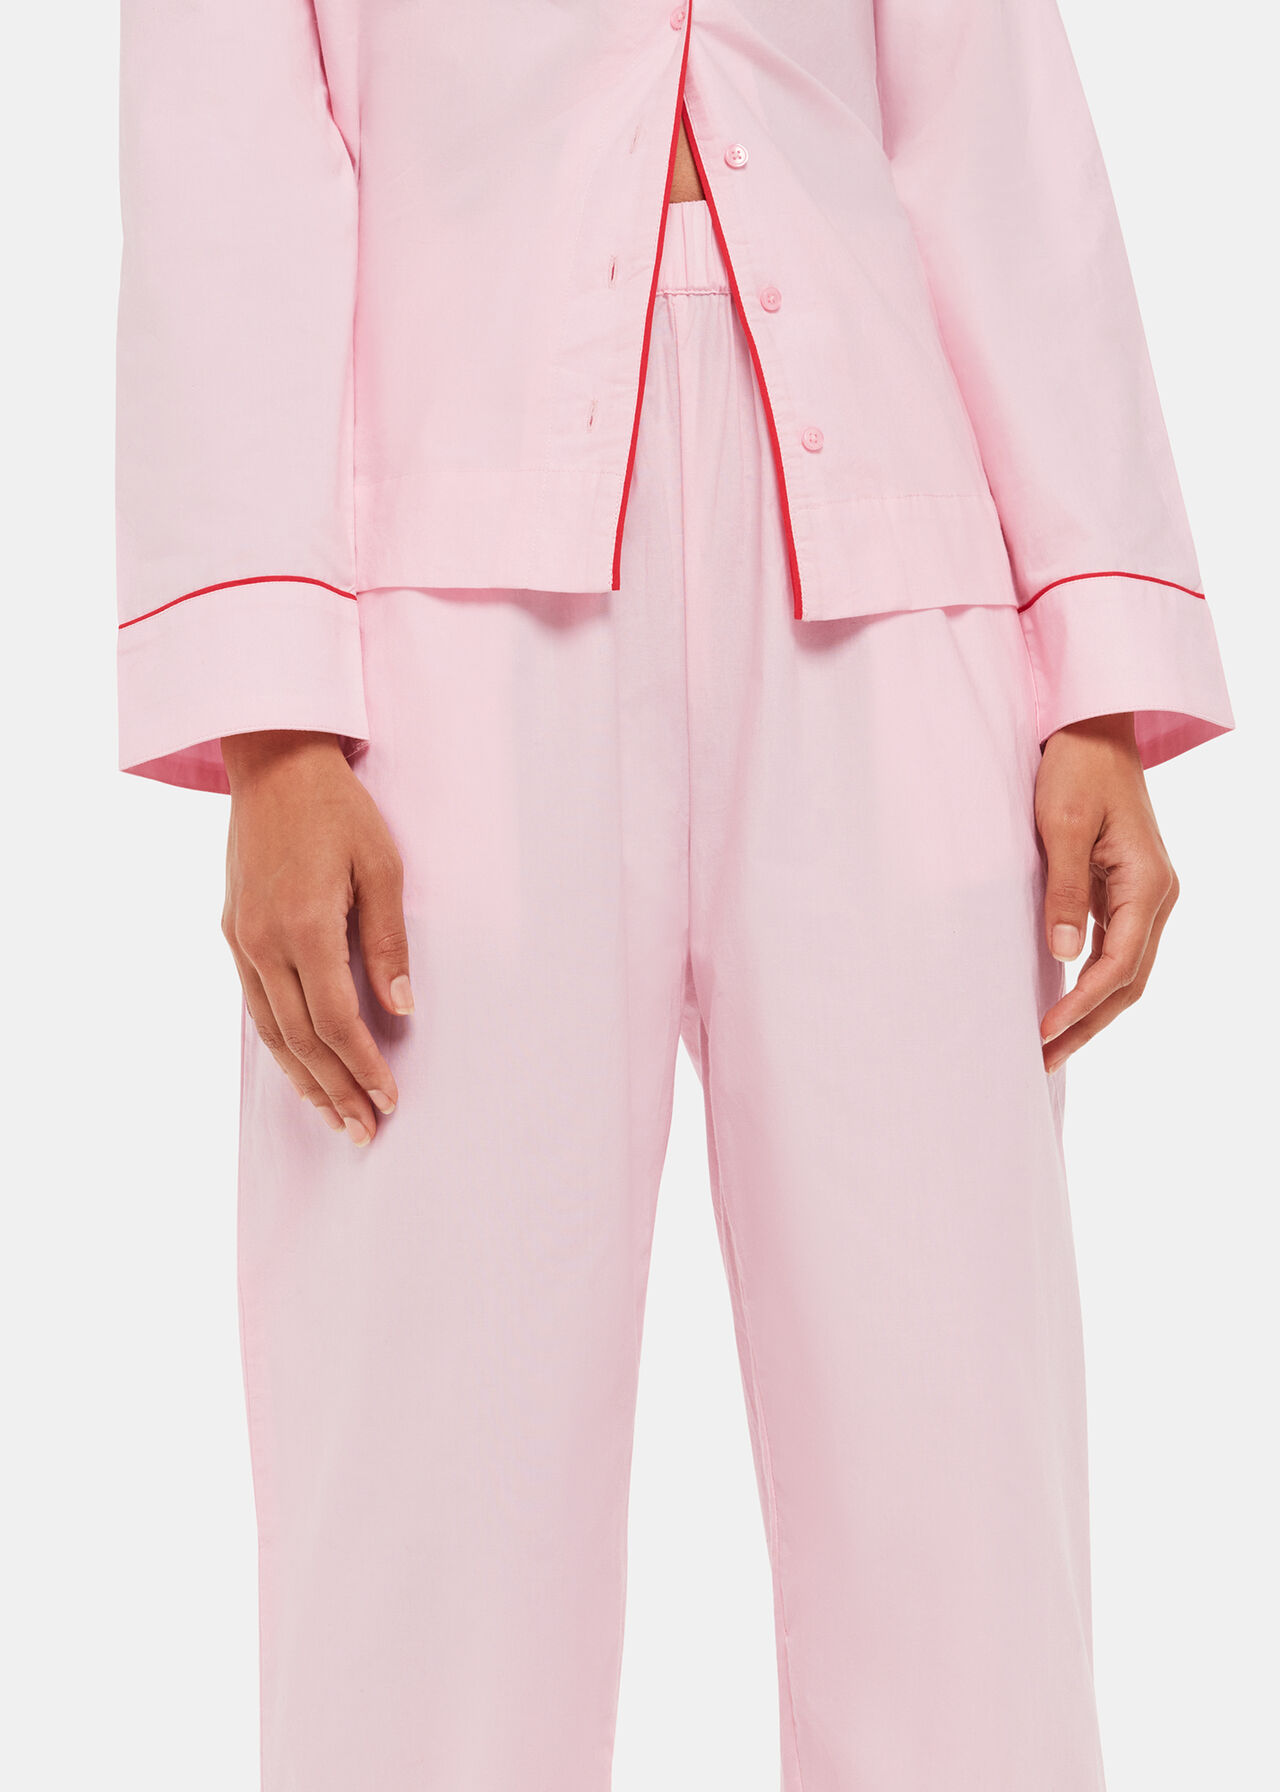 Contrast Piping Button-Up Top and Pants Pajama Set - PINKCOLADA - - $29.95